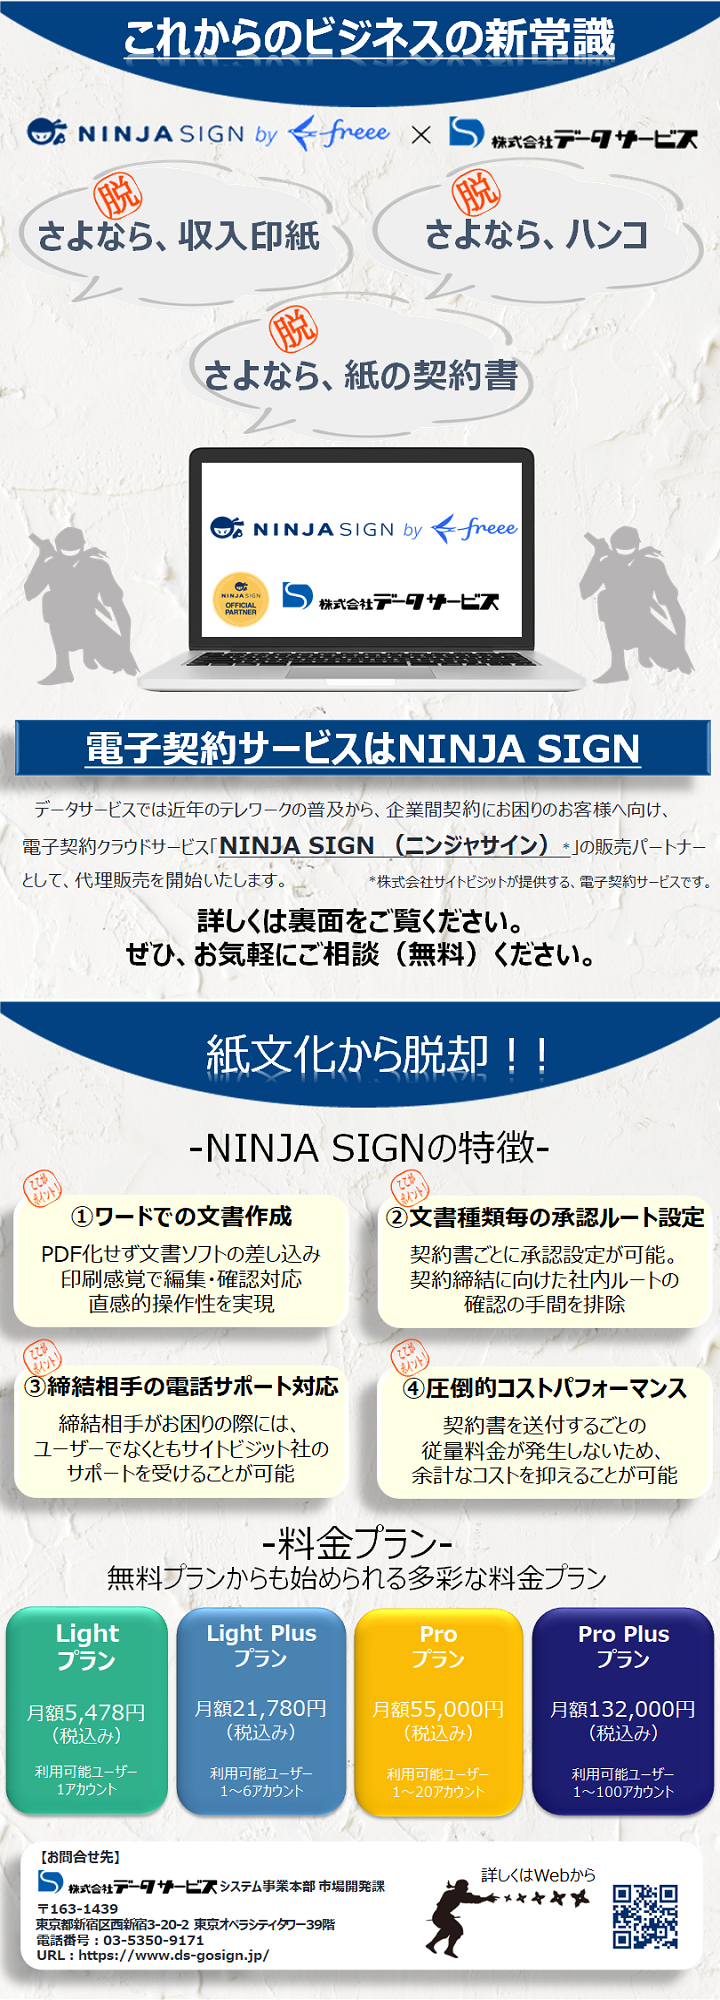 データサービス 電子契約サービス Ninja Sign By Freee 21年12月1日 取り扱い開始 株式会社データサービスのプレスリリース